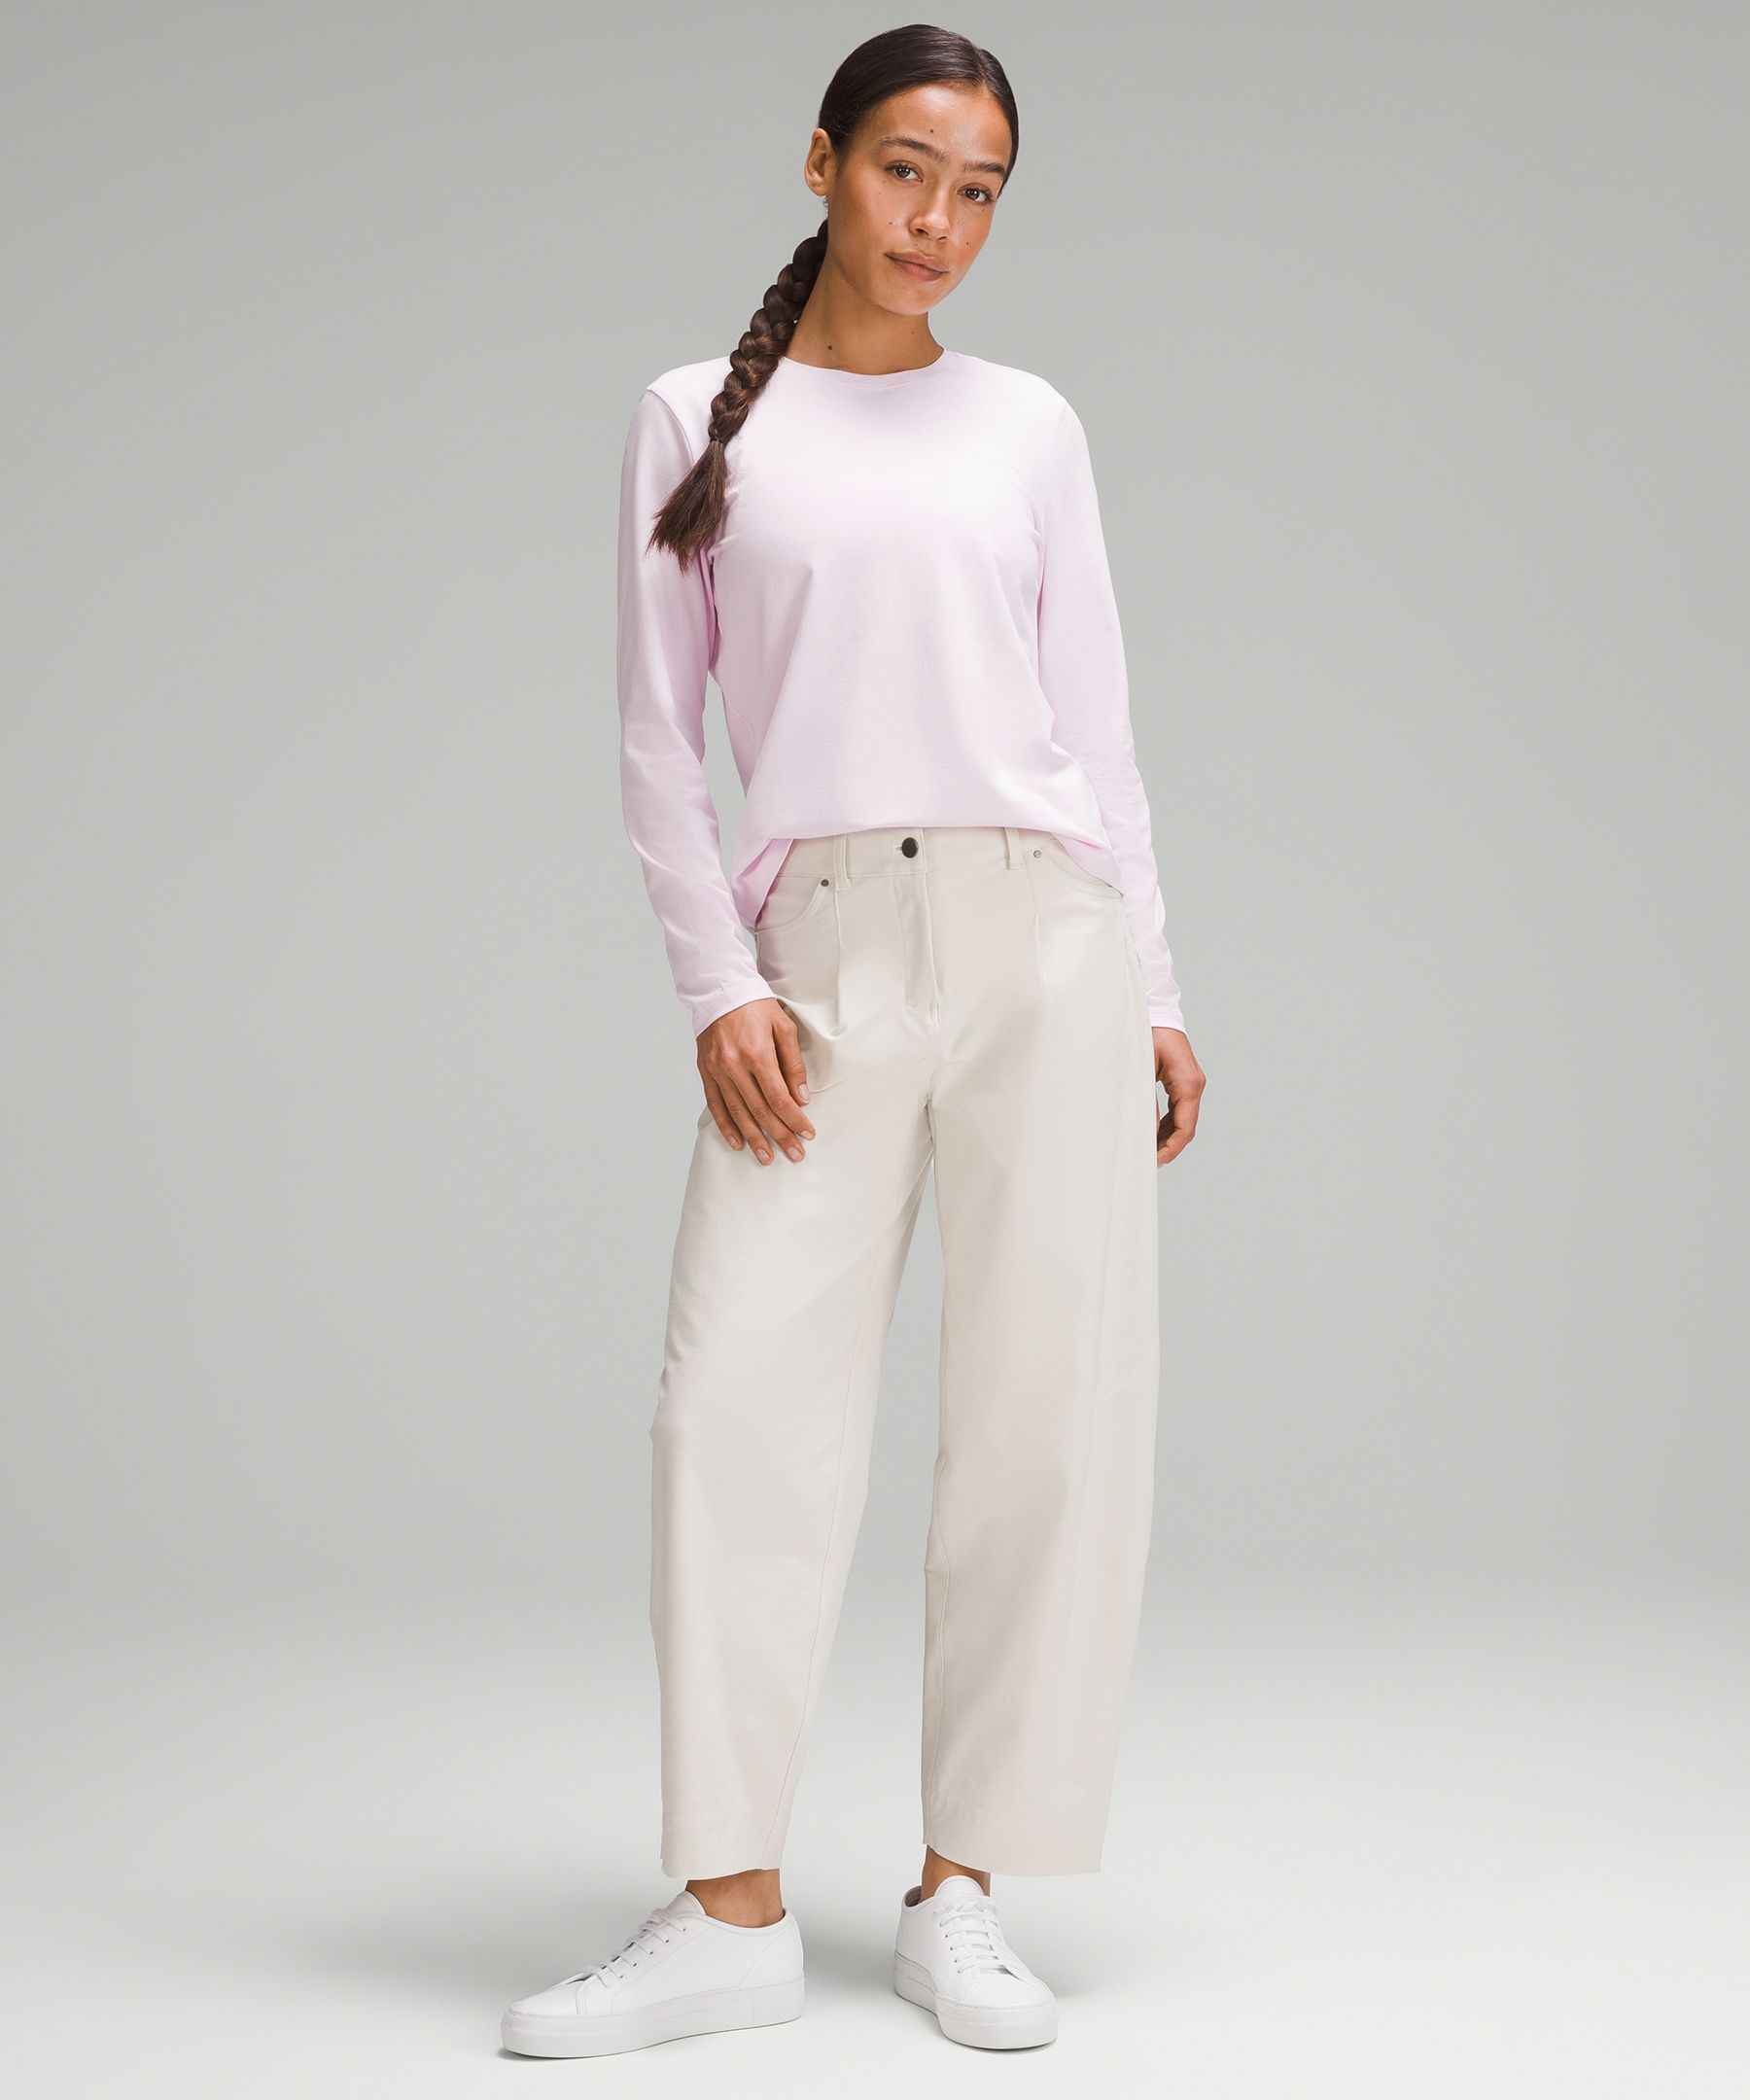 Lululemon Love Long-Sleeve Shirt - Grey/White - Size 8 Pima Cotton Fabric